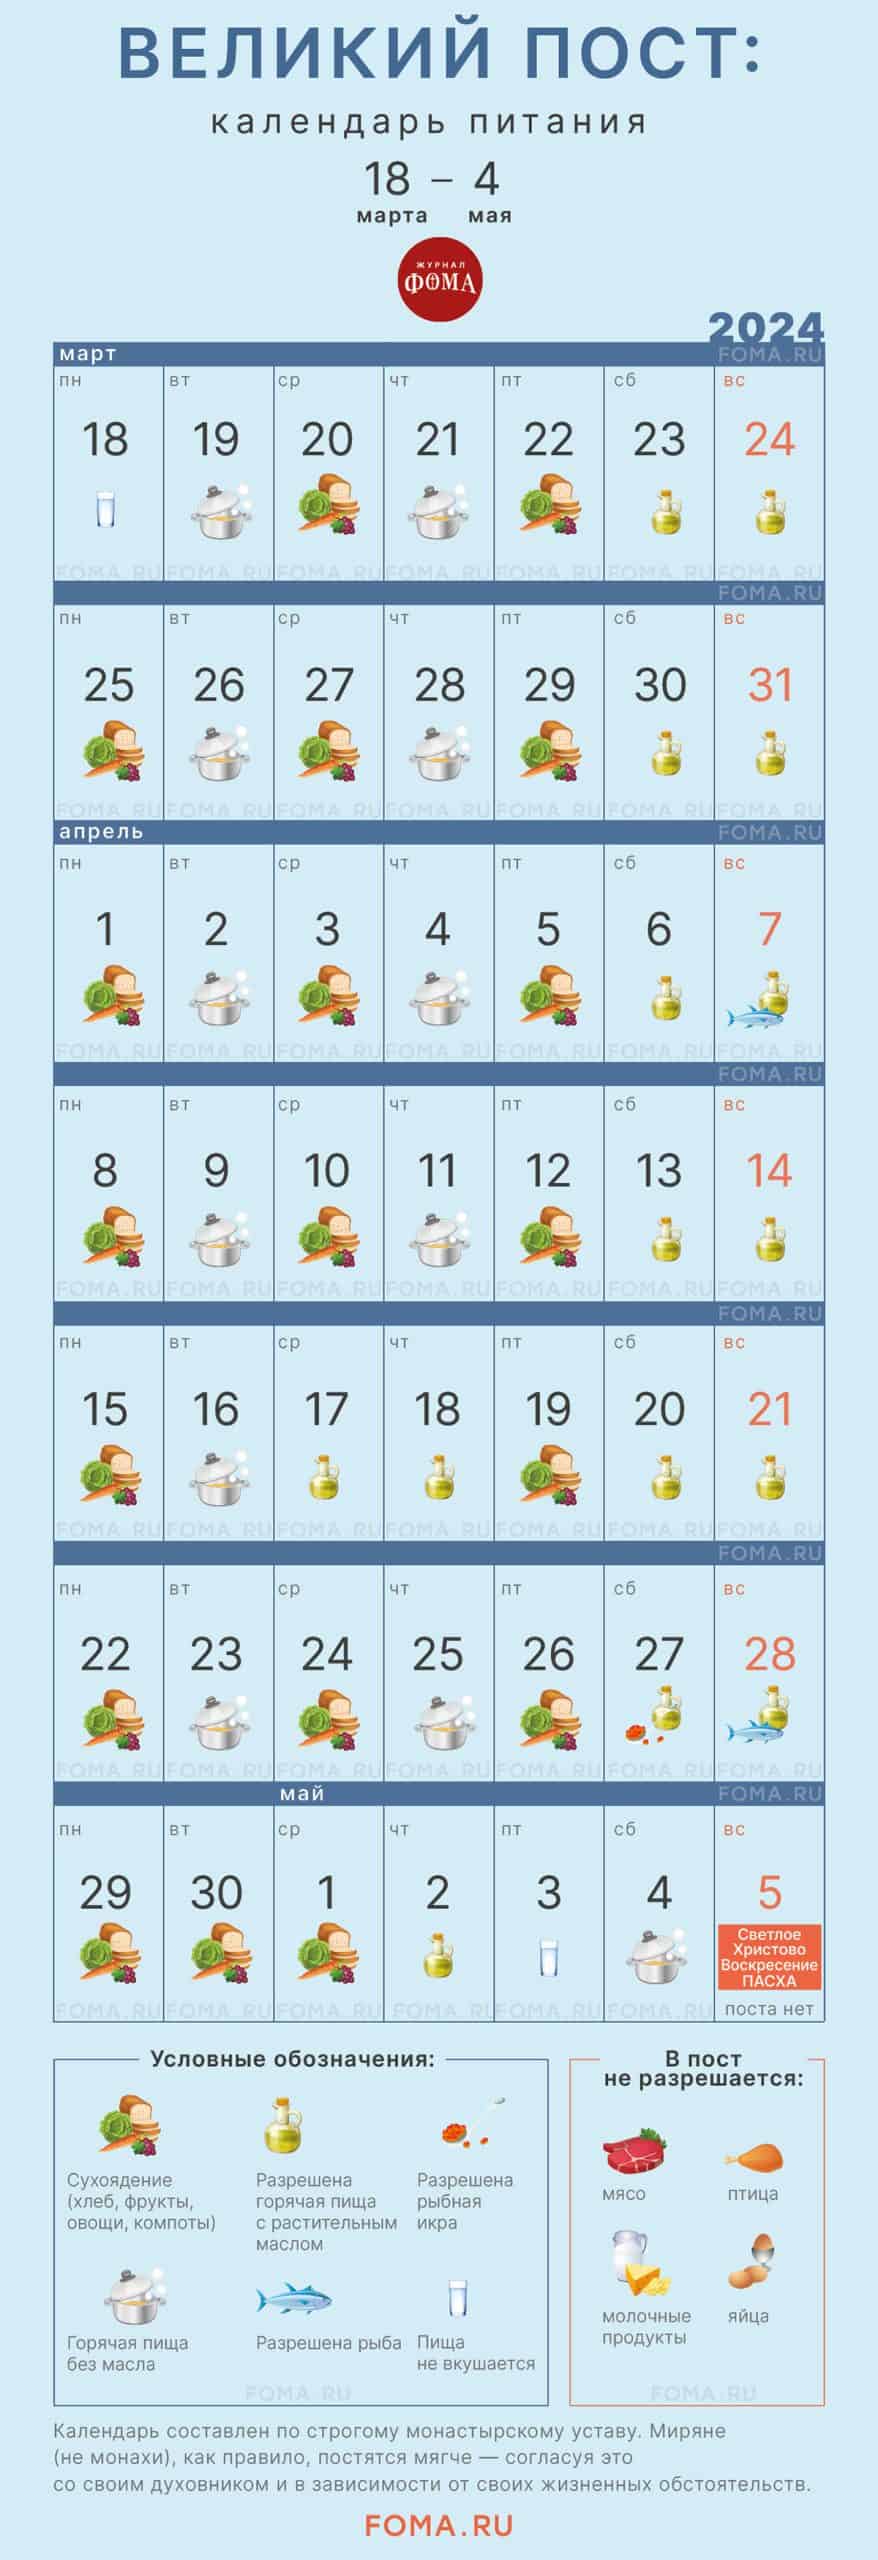 Великий пост: календарь питания по дням